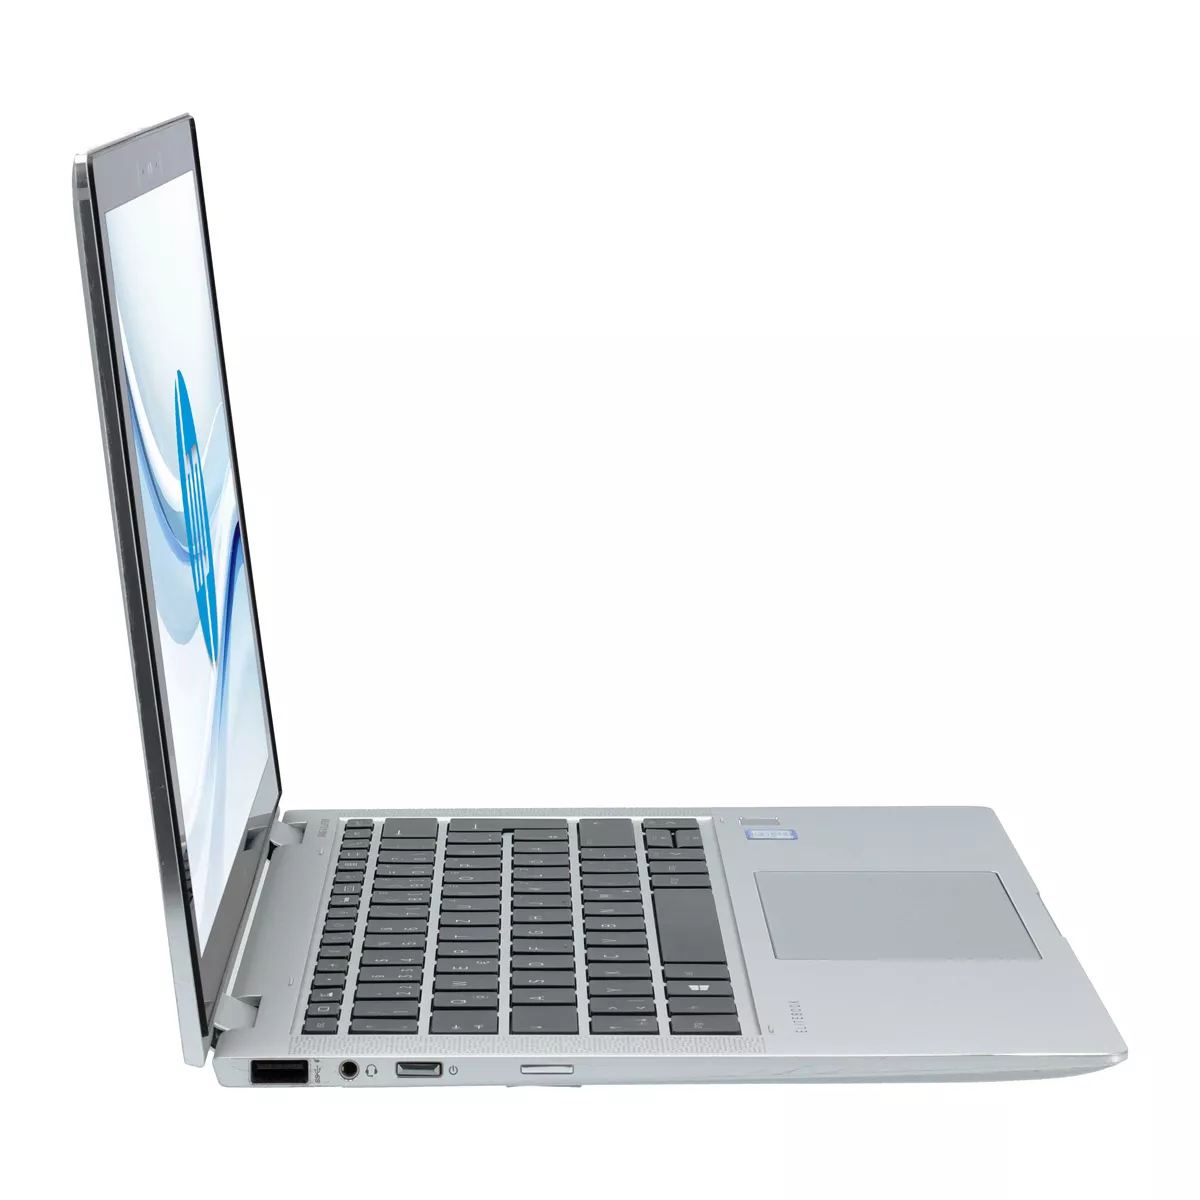 HP EliteBook x360 1030 G4 Core i5 8365U Full-HD Touch 8 GB 500 GB M.2 nVME SSD Webcam A+